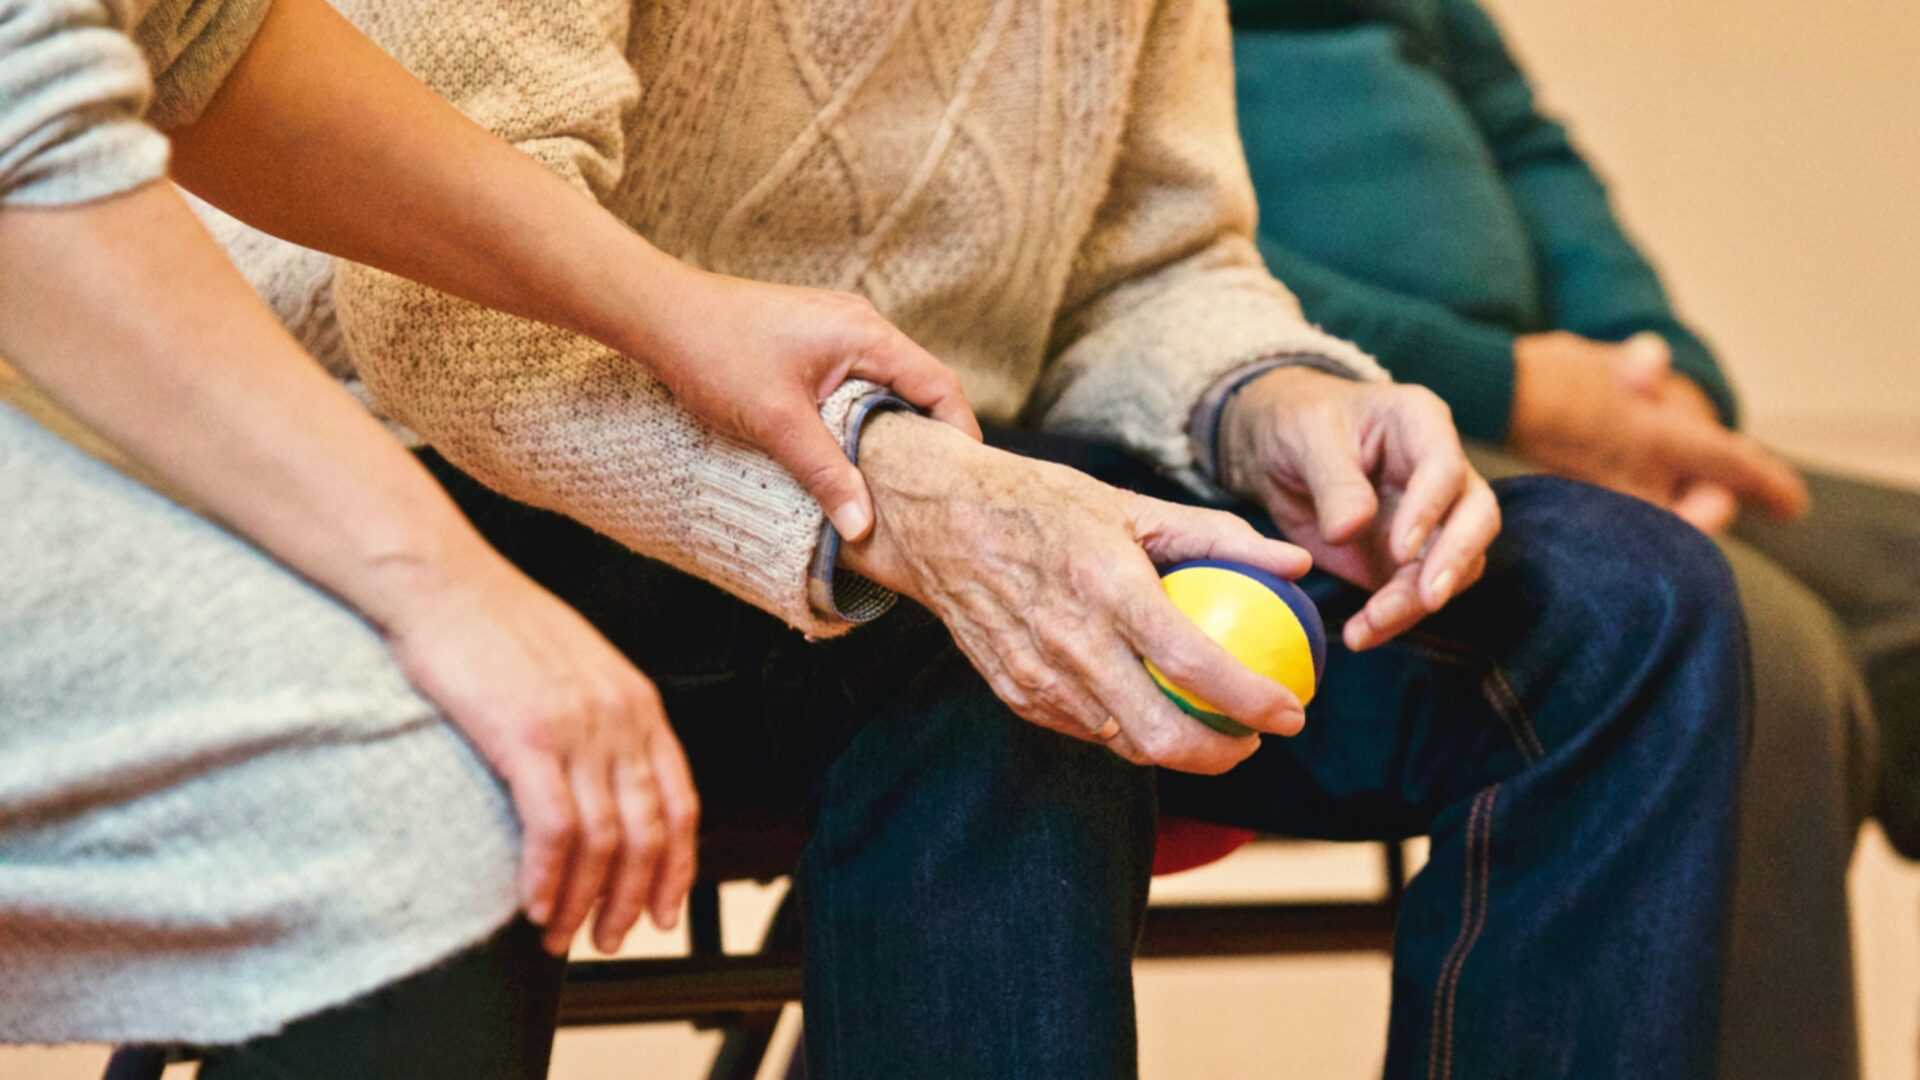 Ein alter Mann hält einen Ball, eine Pflegekraft unterstützt ihn dabei.